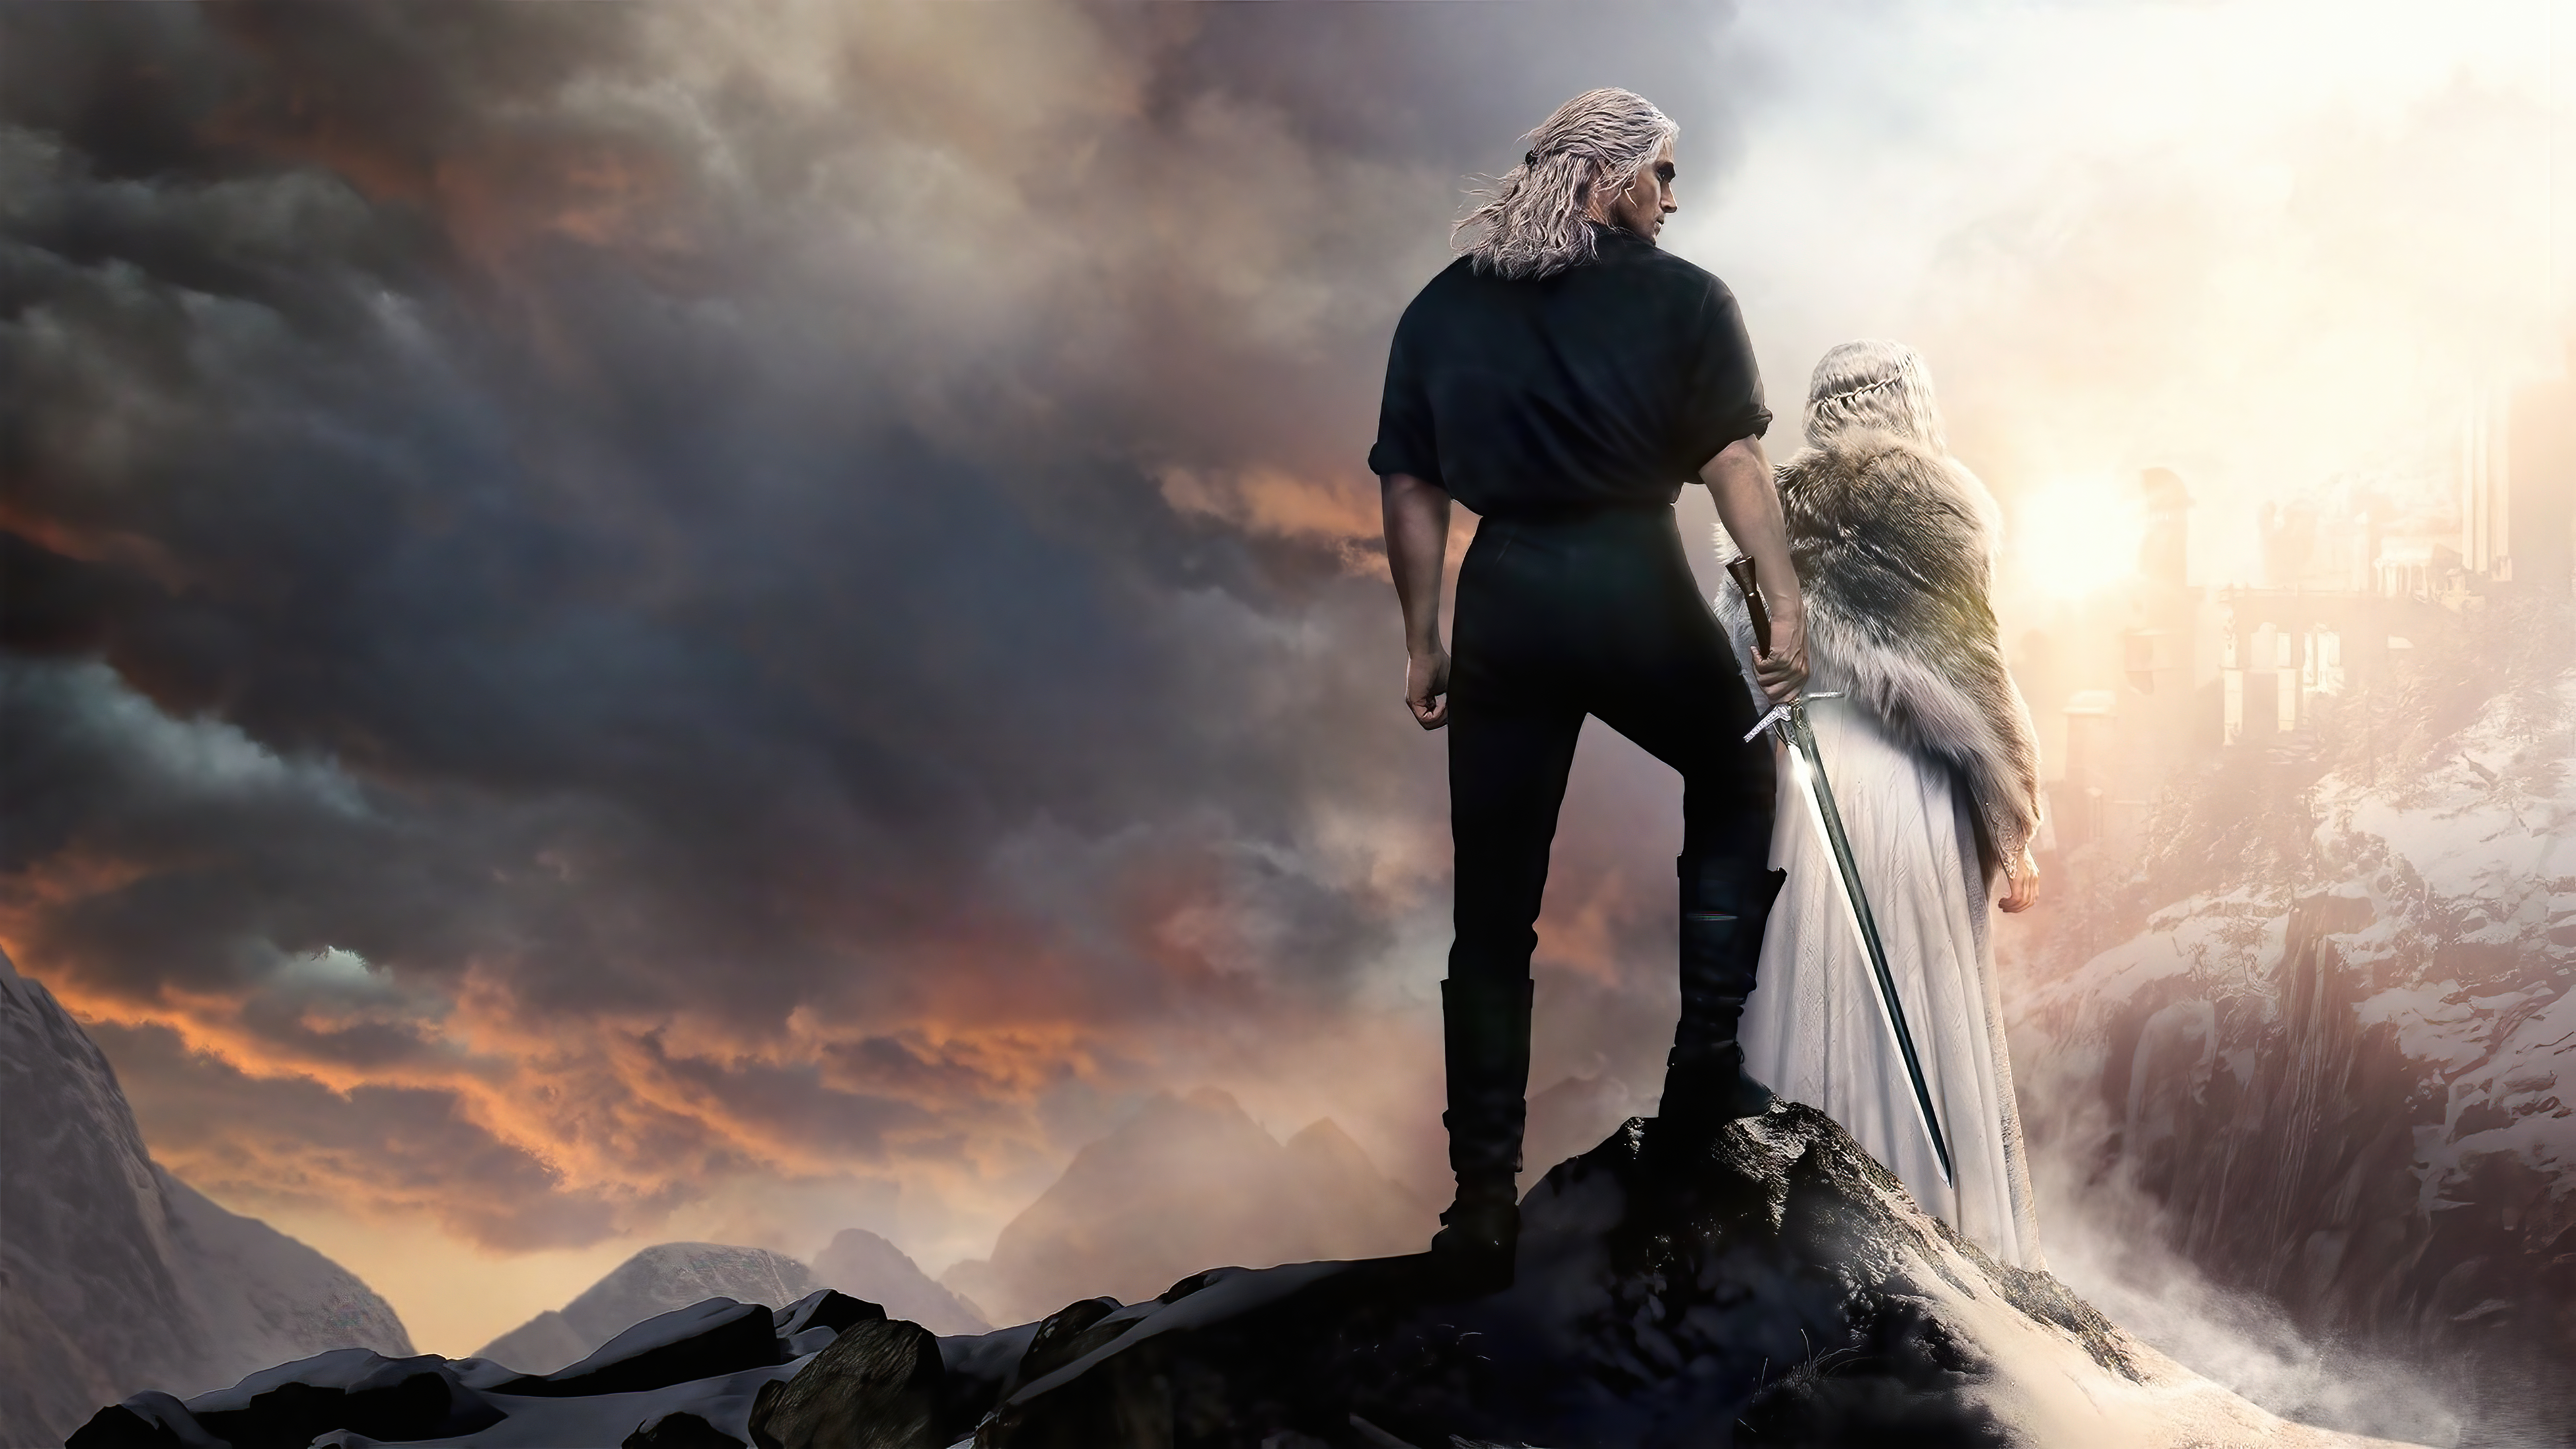 The Witcher Mùa 2 đã chính thức lên sóng, hứa hẹn sẽ mang đến những cảnh quay hoành tráng và một câu chuyện hấp dẫn không thể bỏ qua. Những fan của bộ truyện tranh nổi tiếng này đừng bỏ lỡ cơ hội cùng Geralt tiếp tục phiêu lưu nhé! Hình ảnh liên quan đang chờ đón bạn.